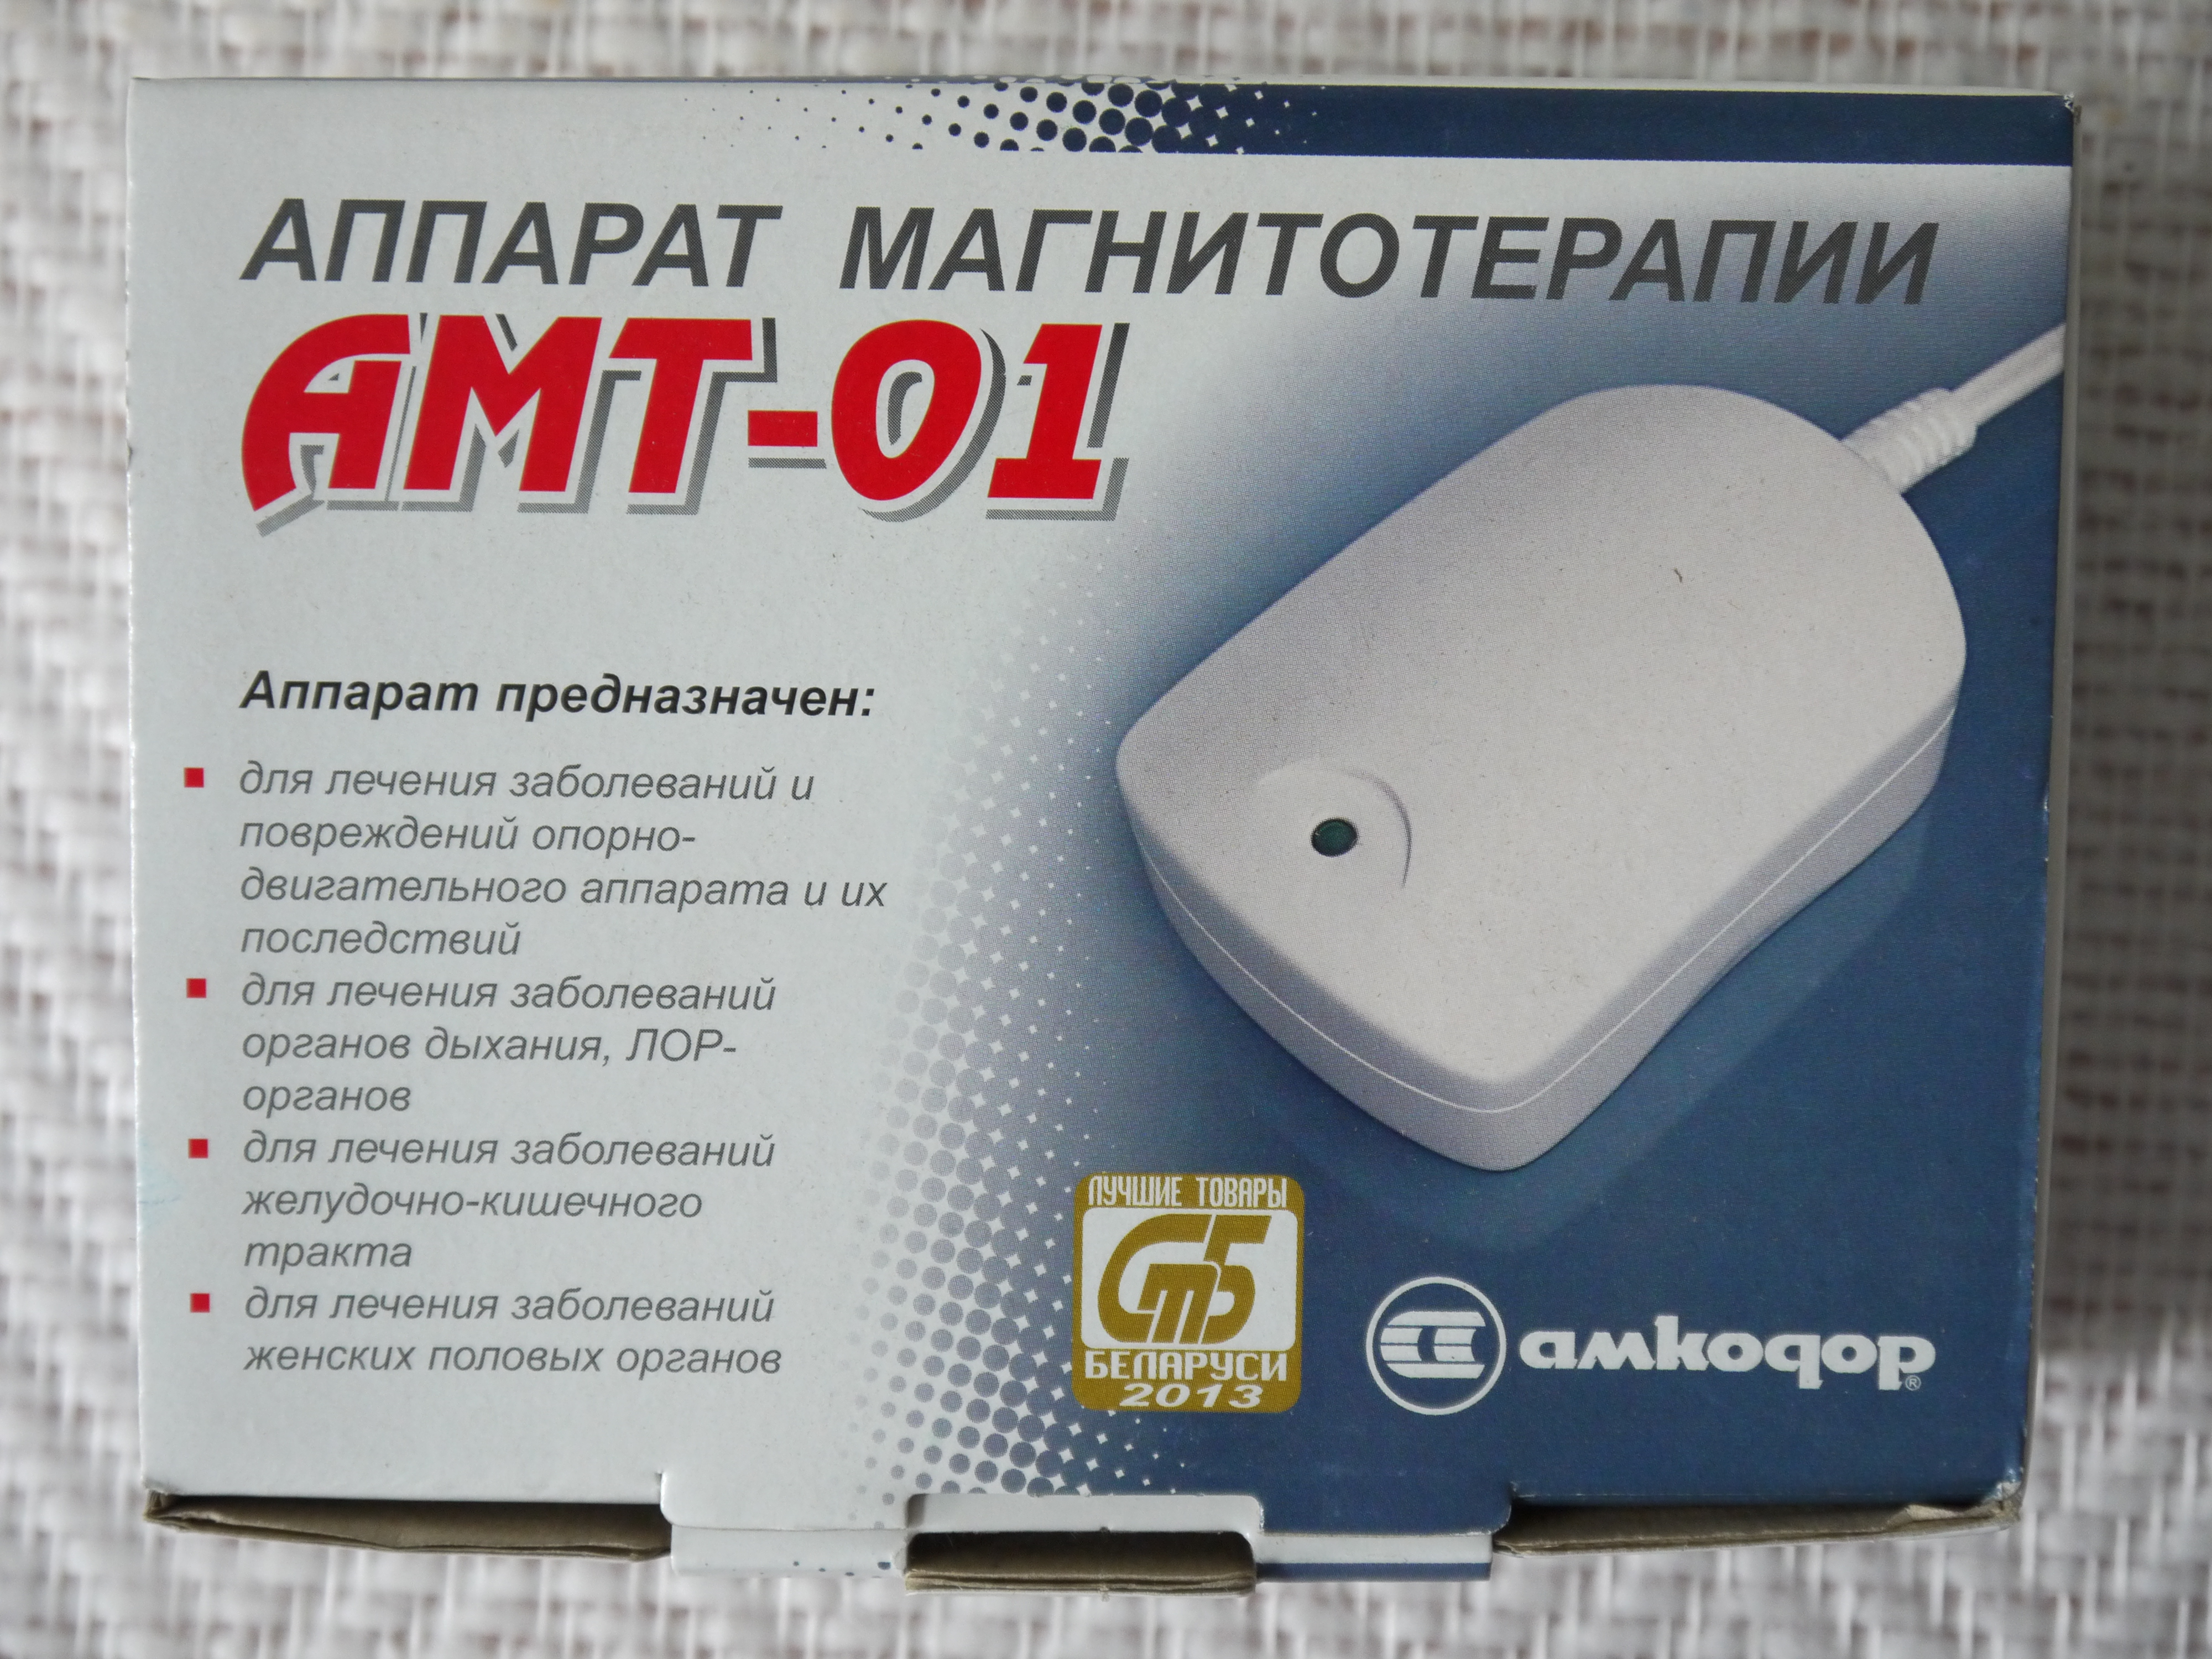 Купить магнитный аппарат. Аппарат Магнито терапии АМТ-01. Аппарат магнитотерапии АМТ-01 (Беларусь). Магнит Амкодор АМТ 01. Аппарат магнитотерапии переносной АМТ 01.